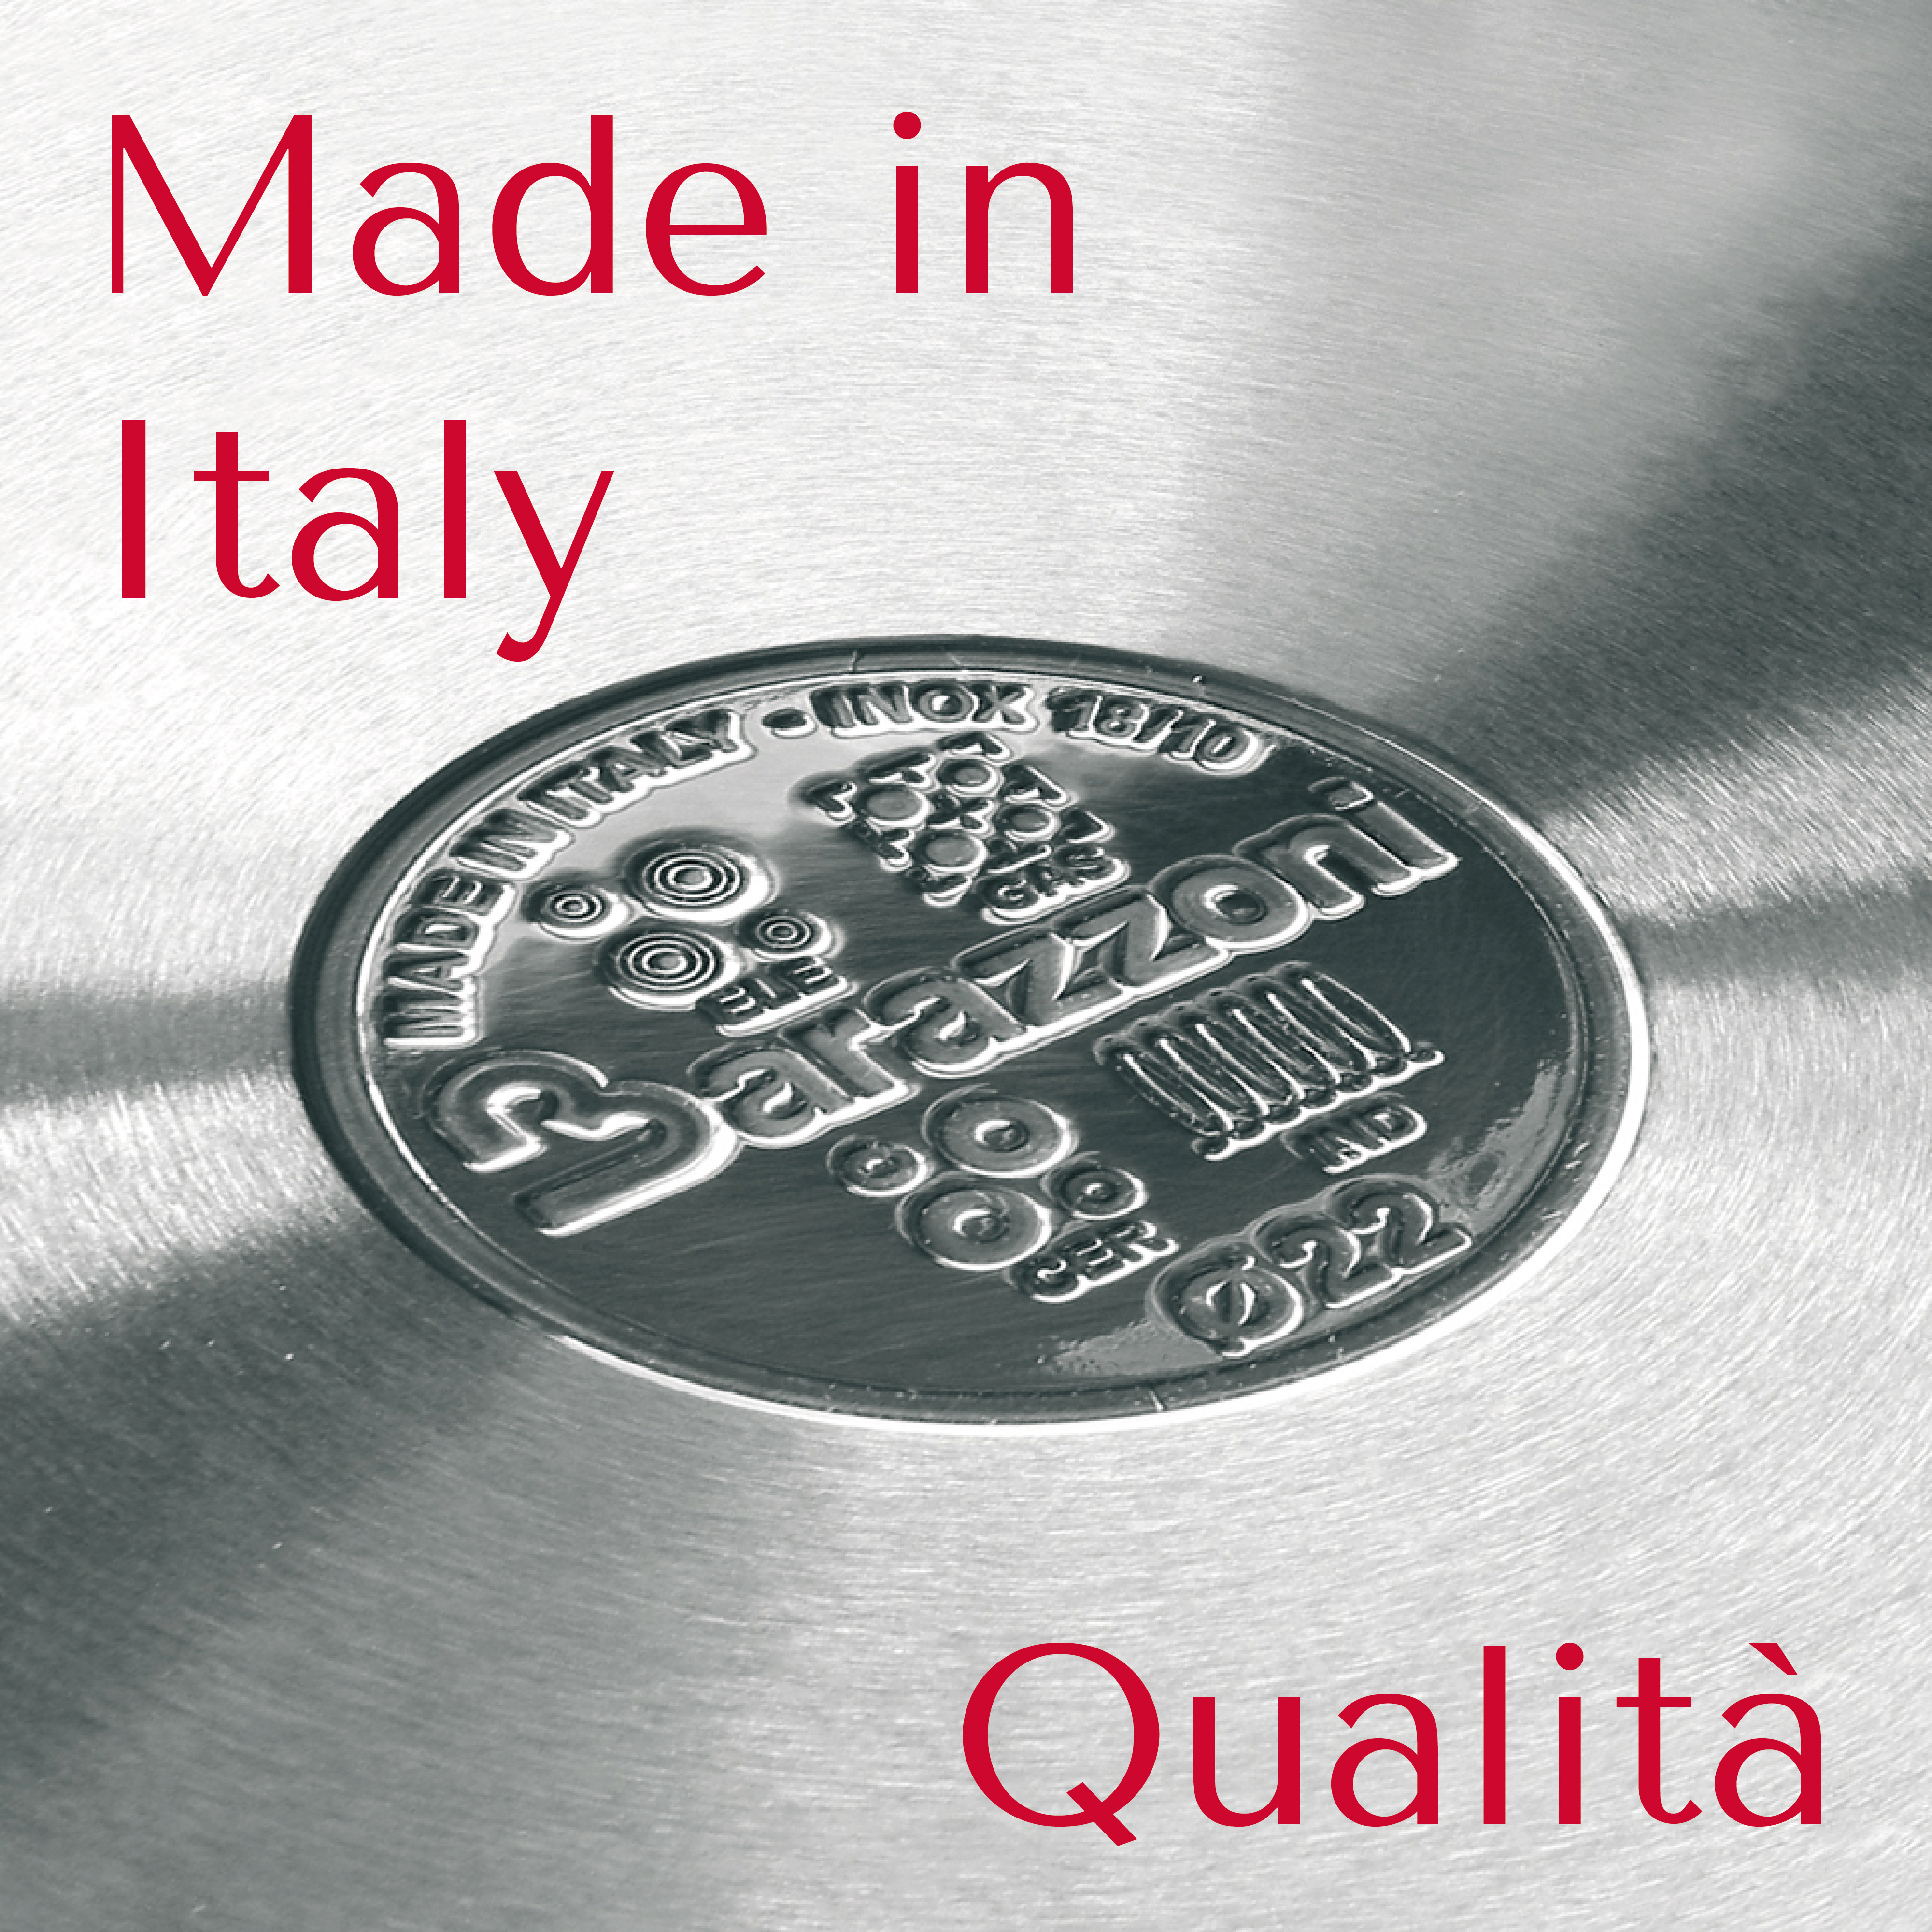 Qualità e Made in Italy_valore_Tavola disegno 1.jpg